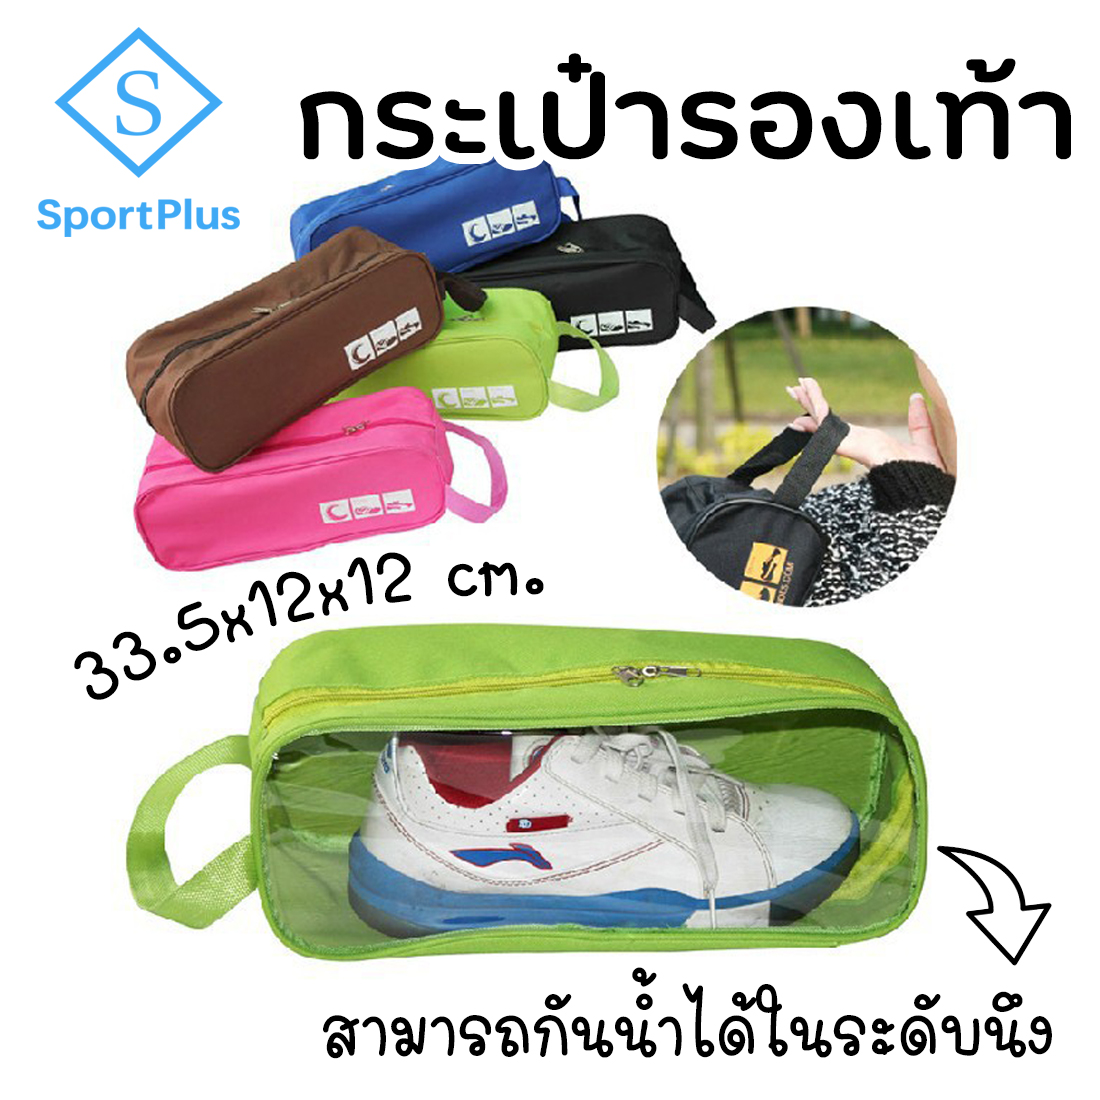 SportPlus กระเป๋าใส่รองเท้าฟุตบอล กันน้ำ มีหูหิ้ว กระเป๋าใส่รองเท้า กระเป๋าเอนกประสงค์ กันน้ำได้เป็นอย่างดี Football Shoes Bag